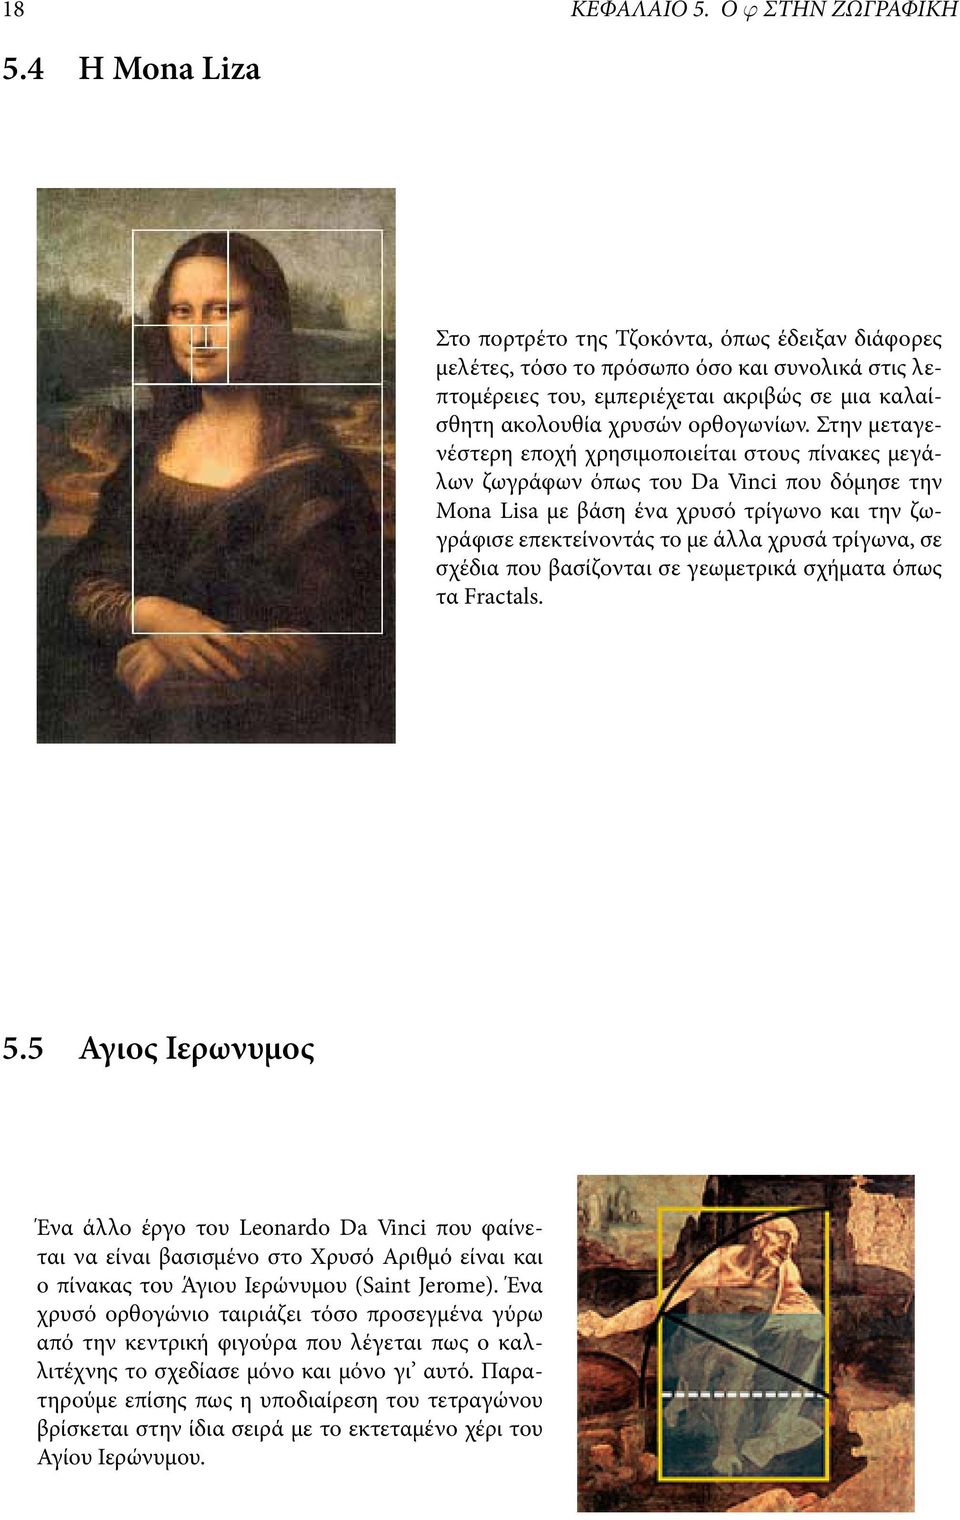 Στην μεταγενέστερη εποχή χρησιμοποιείται στους πίνακες μεγάλων ζωγράφων όπως του Da Vinci που δόμησε την Mona Lisa με βάση ένα χρυσό τρίγωνο και την ζωγράφισε επεκτείνοντάς το με άλλα χρυσά τρίγωνα,